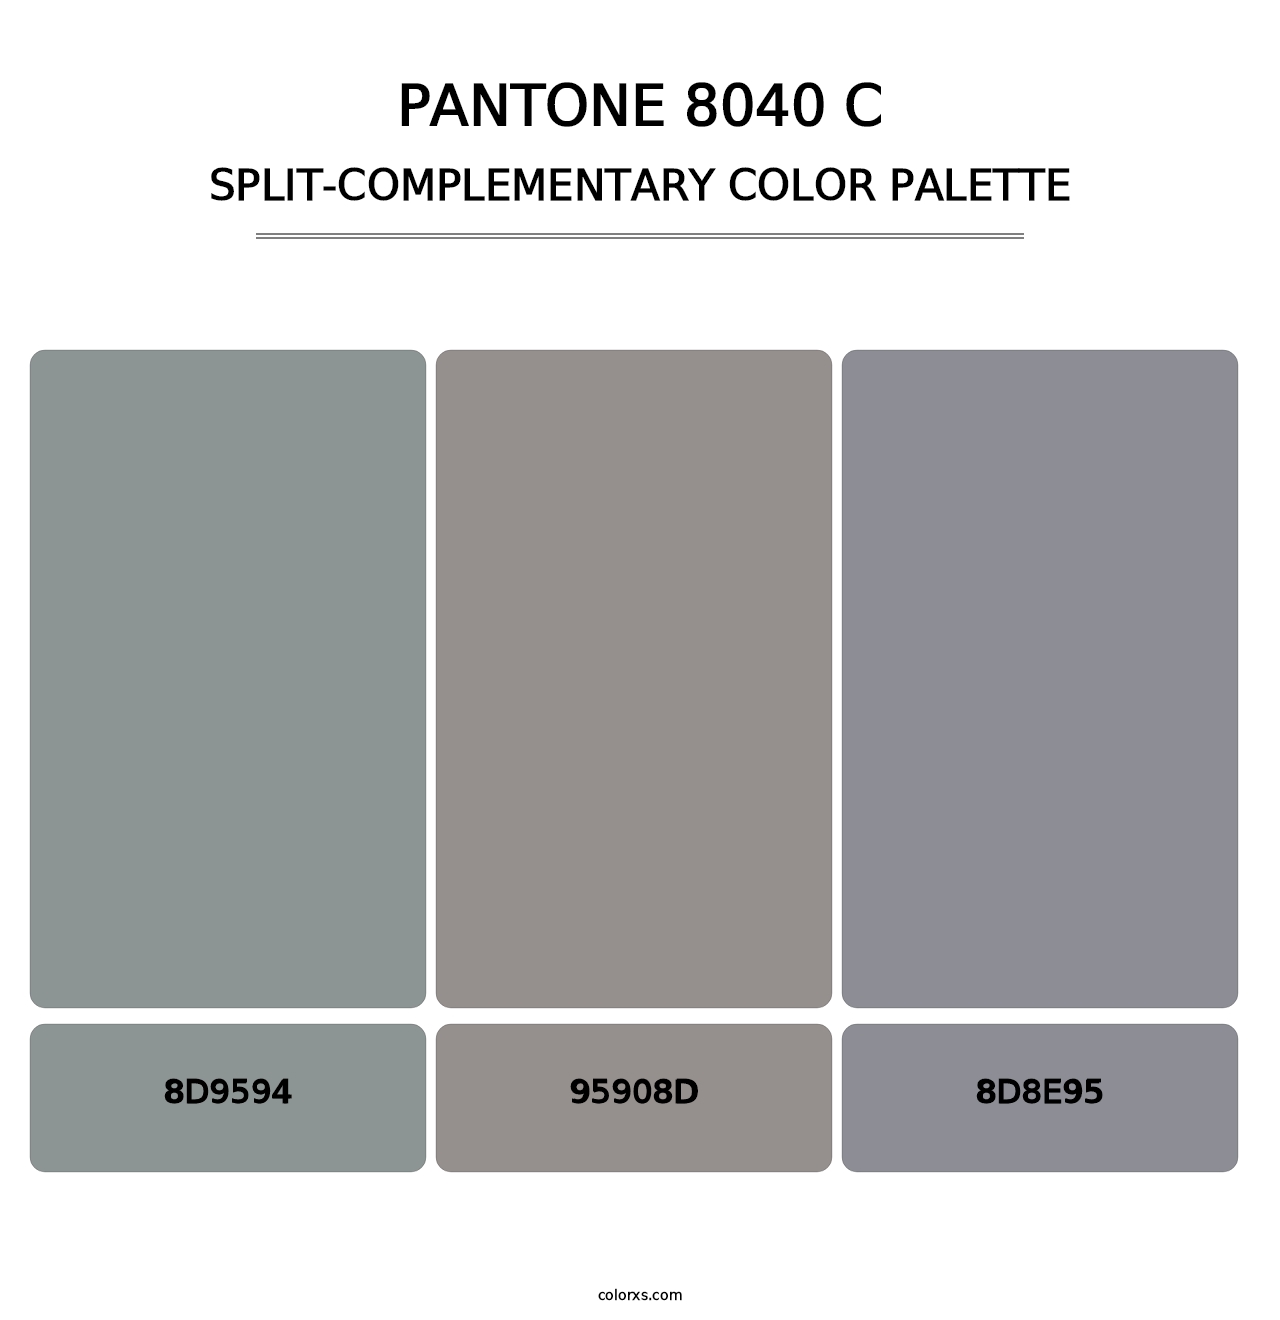 PANTONE 8040 C - Split-Complementary Color Palette